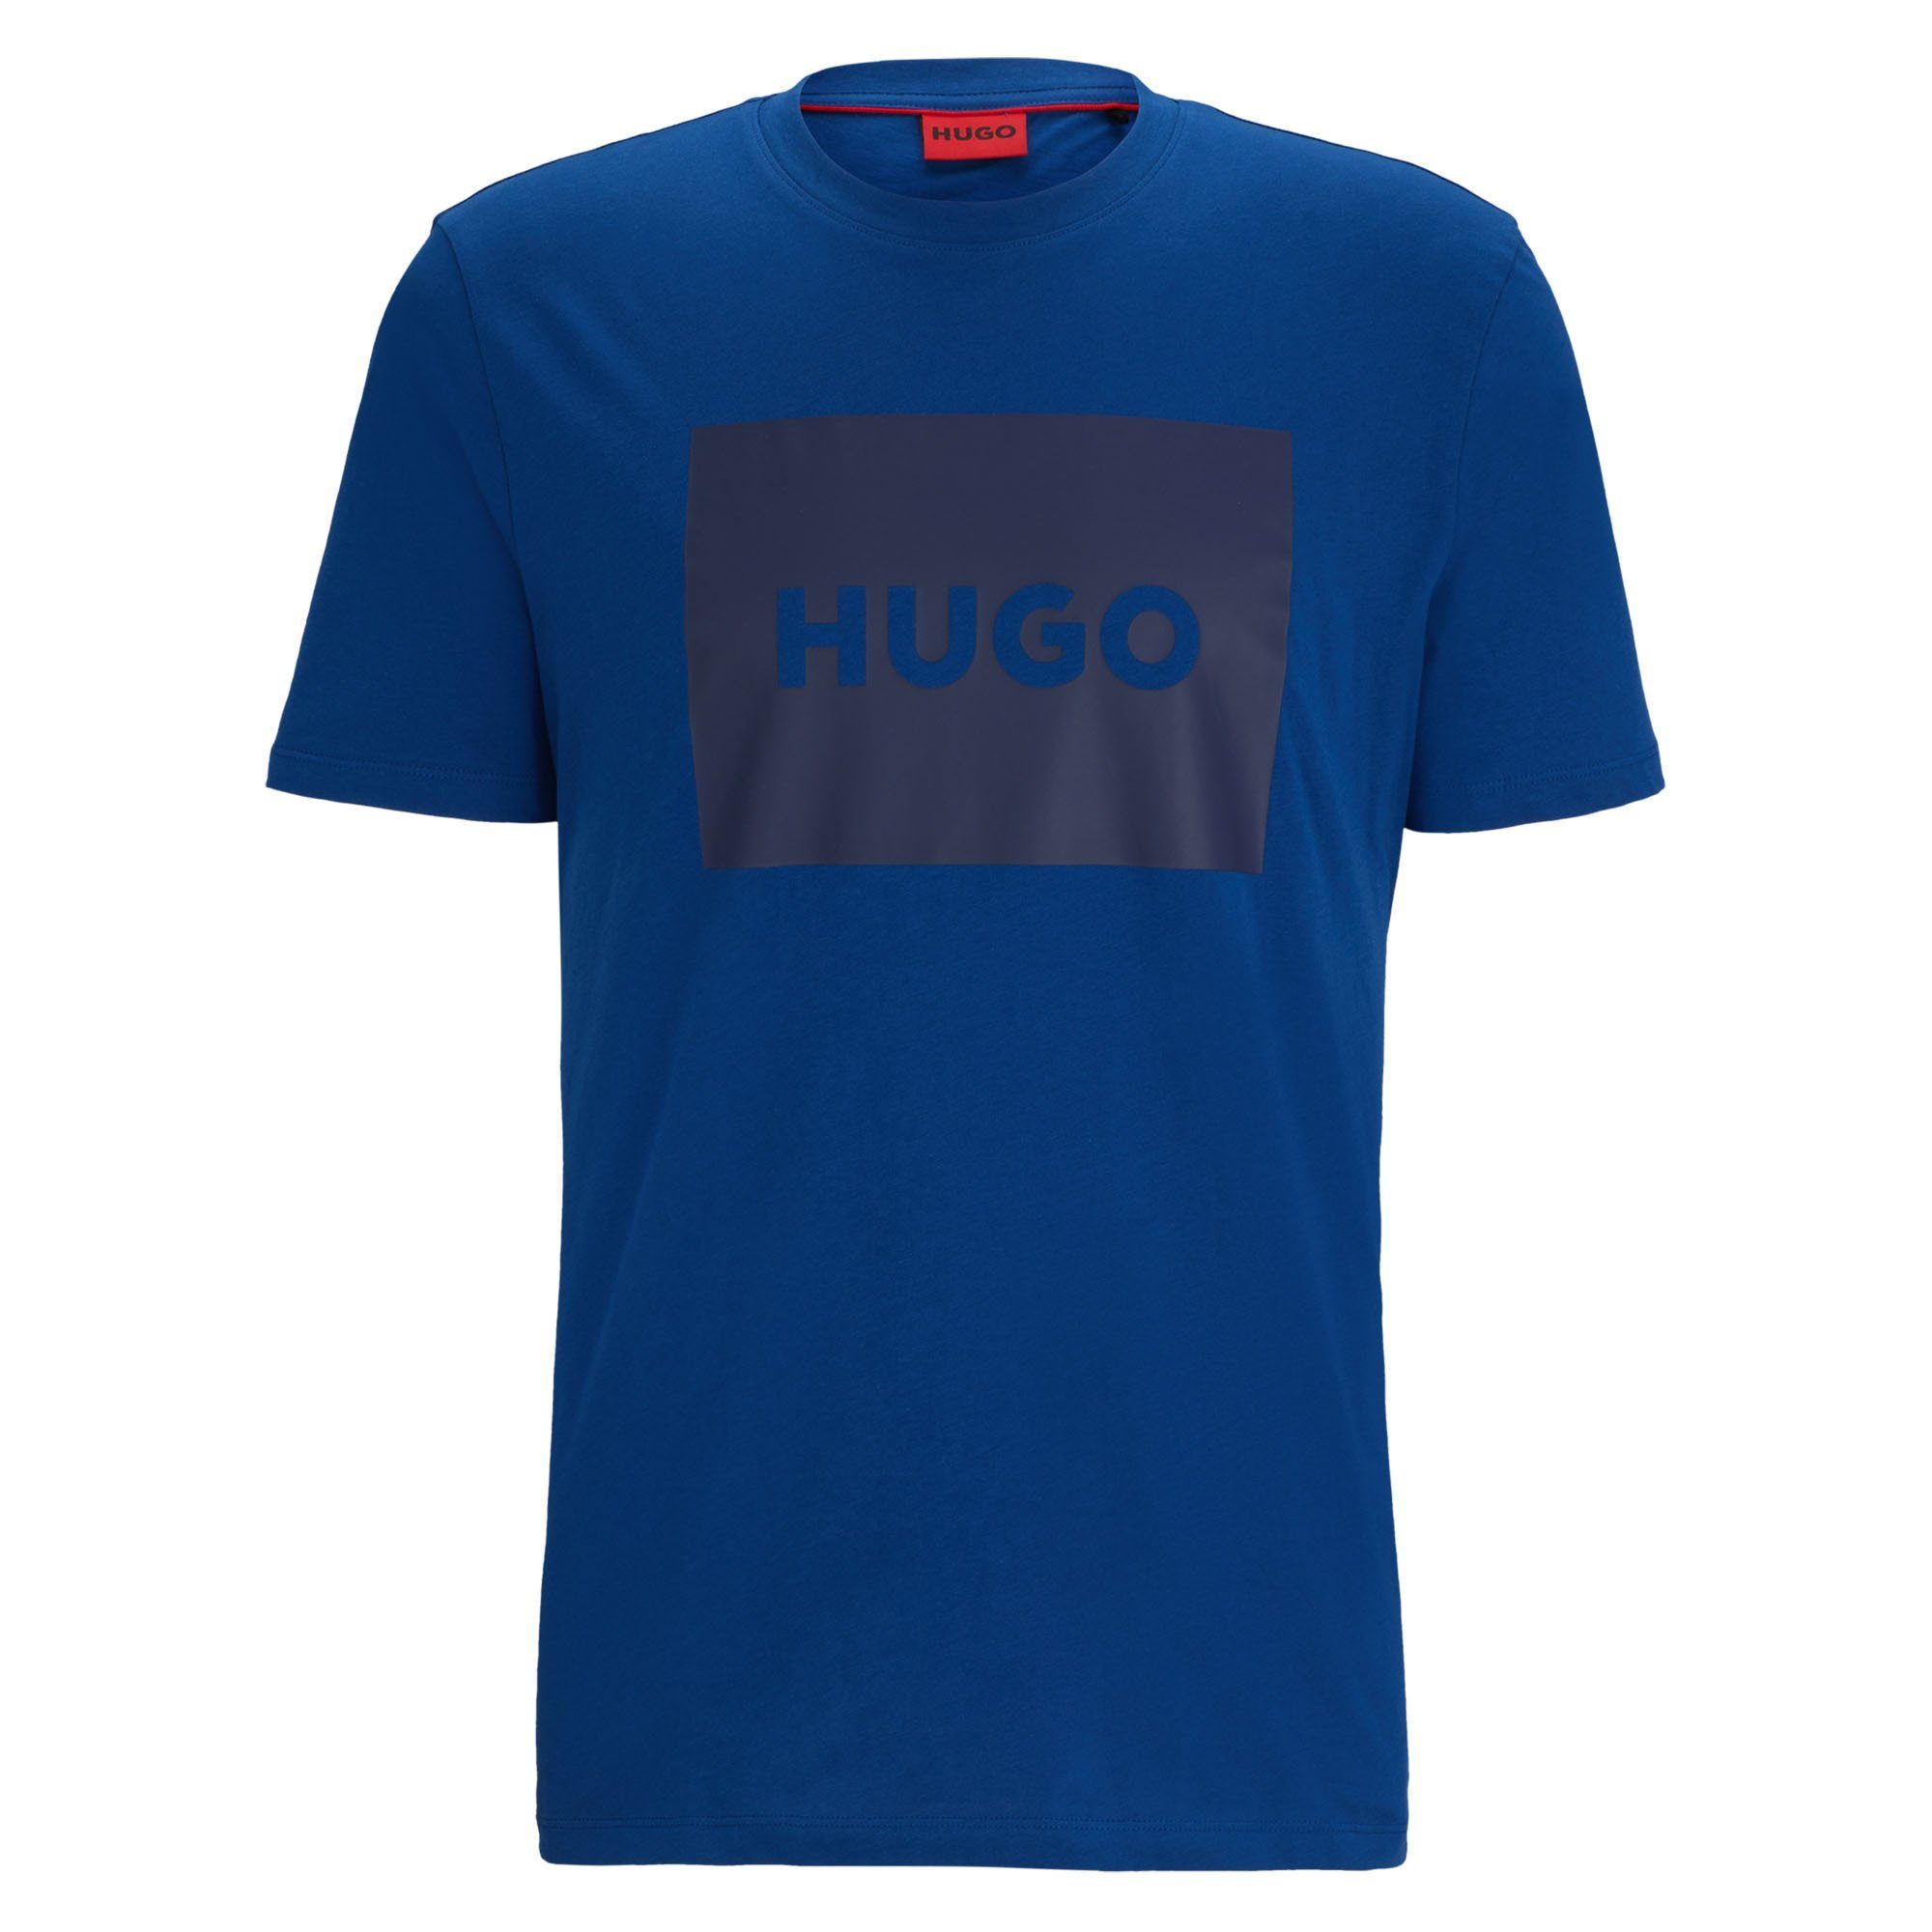 - (Navy) Kurzarm T-Shirt Blau Herren T-Shirt Rundhals, HUGO Dulive222,